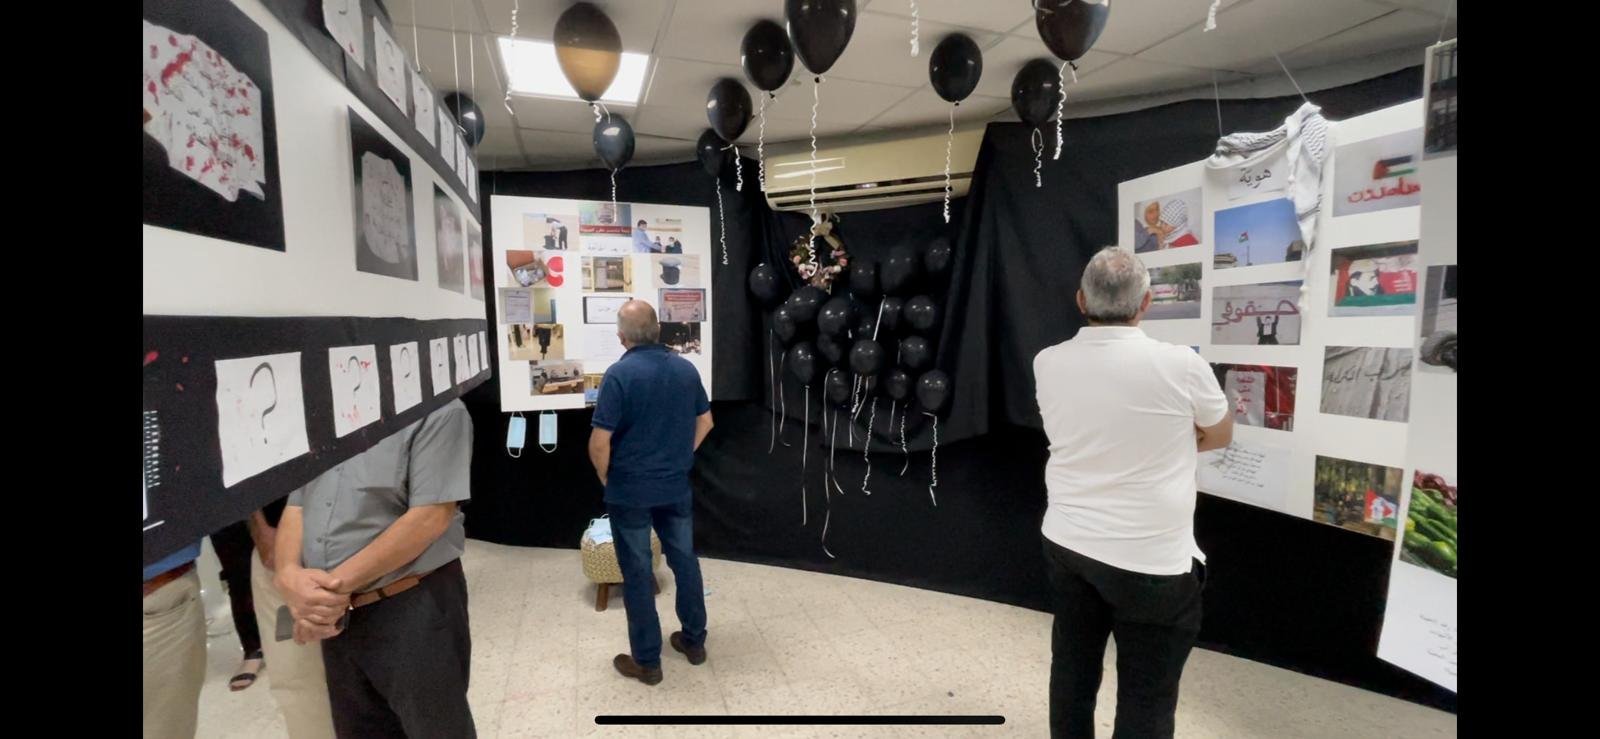 افتتاح معرض صور "حكايات" في المدرسة الشاملة الجديدة في الرينة-8